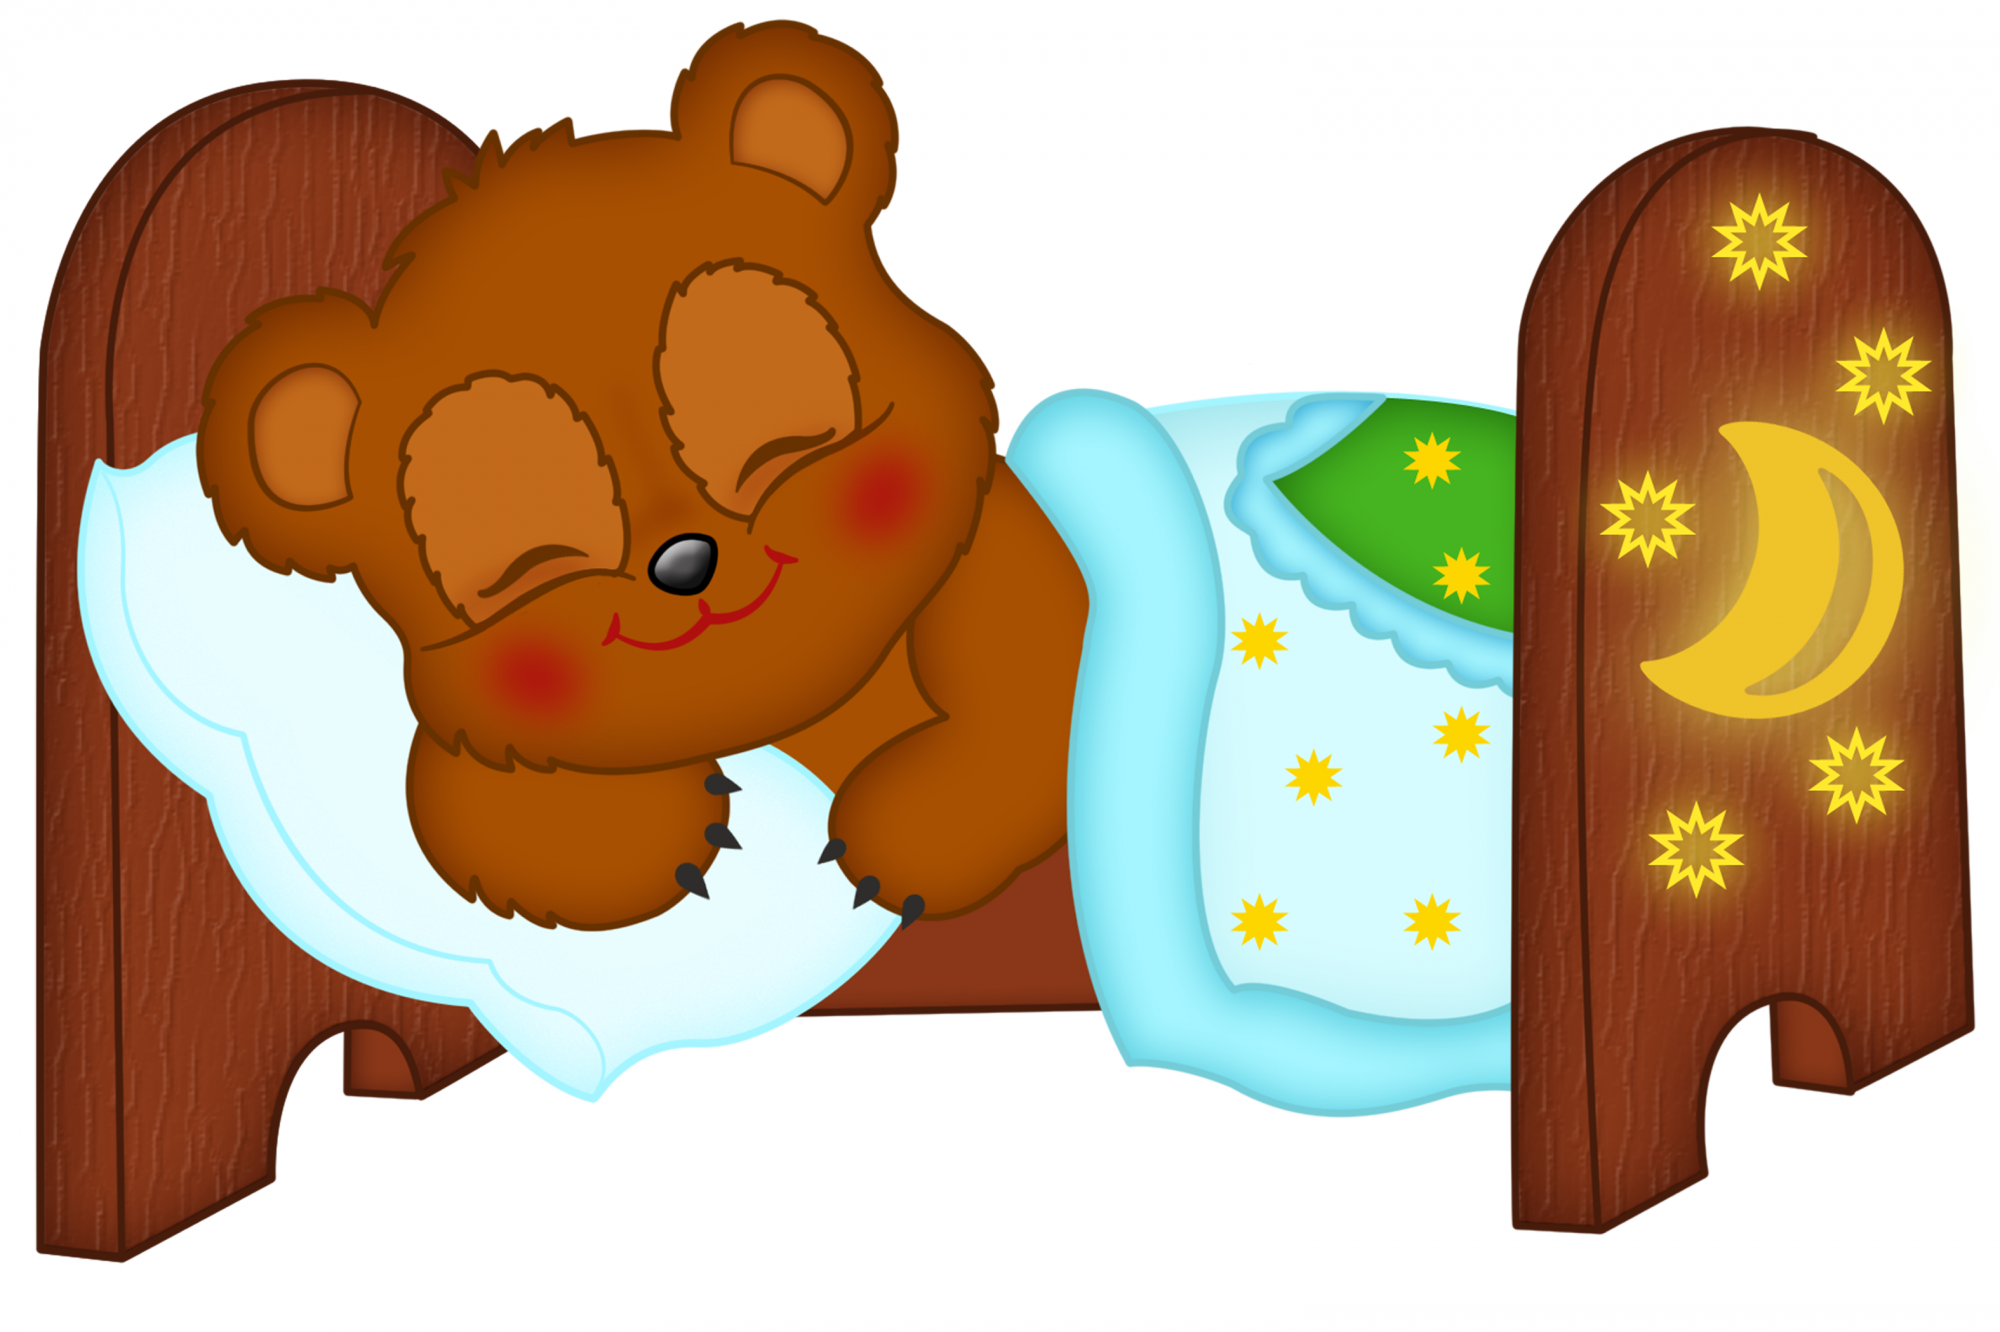 Медвежонок спит в кроватке